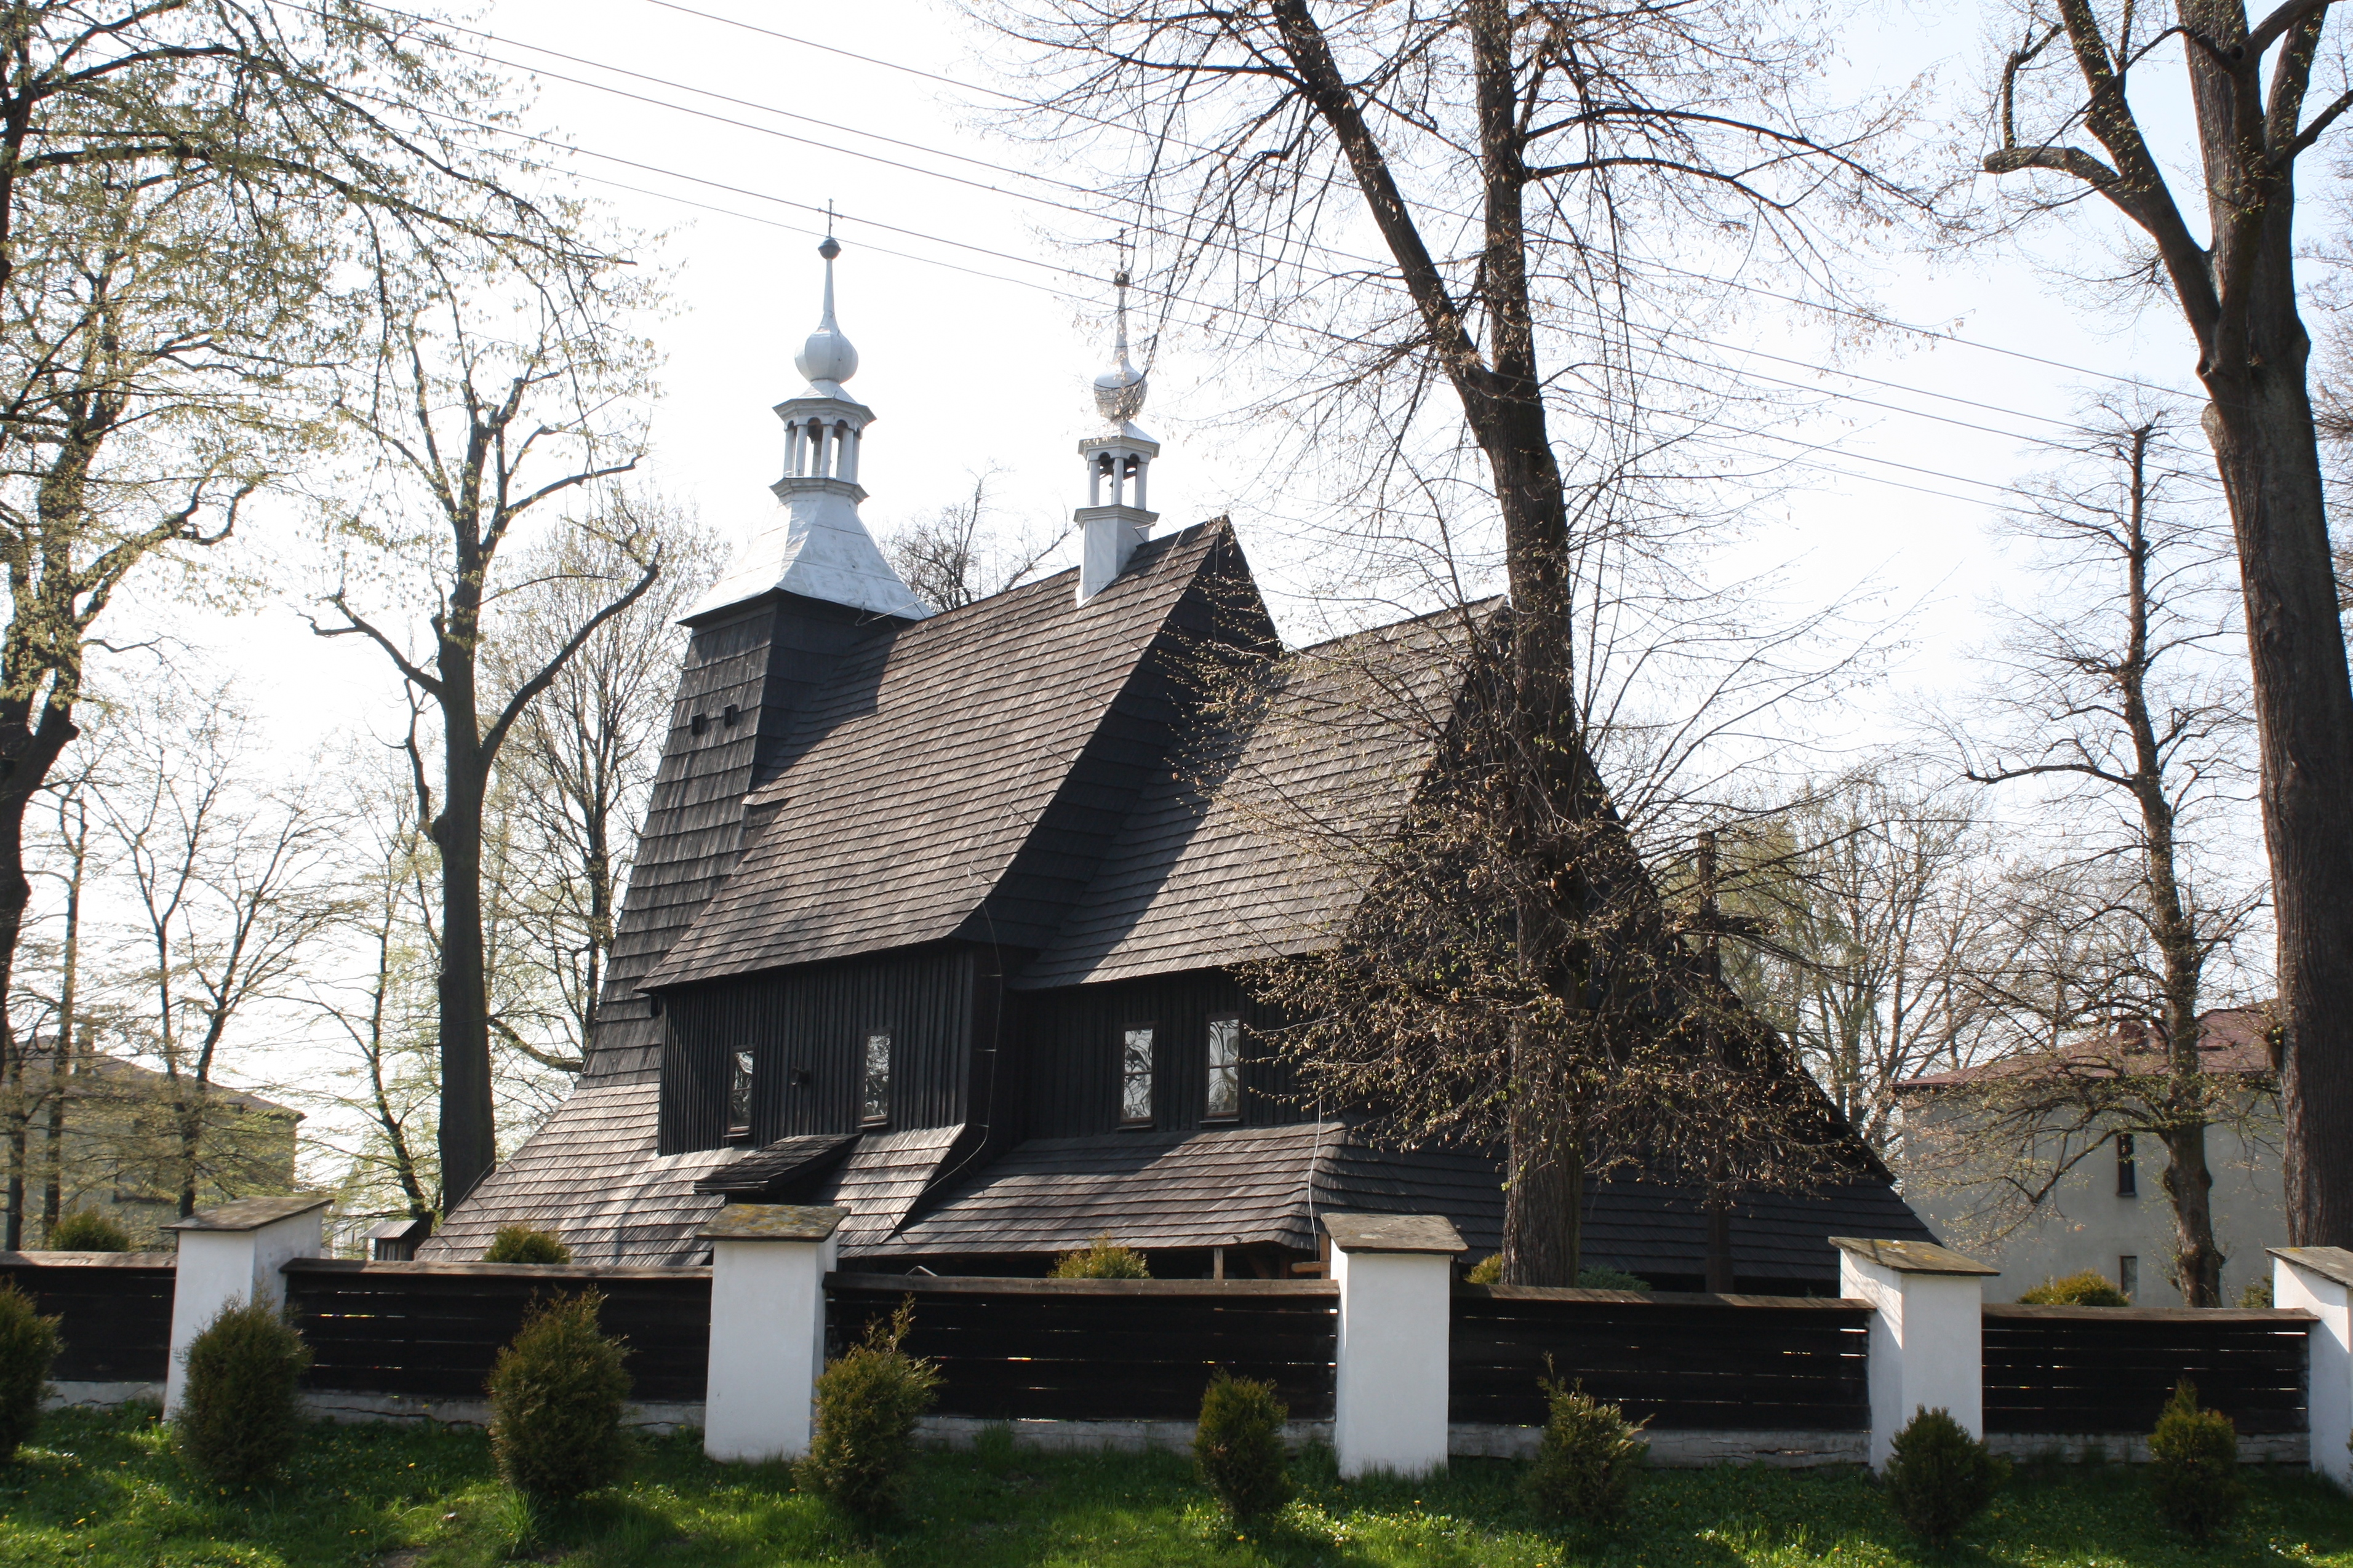 Kościół drewniany z XVI w. w Grzawie, gmina Miedźna. Fot. Maria Lipok-Bierwiaczonek, 2020.